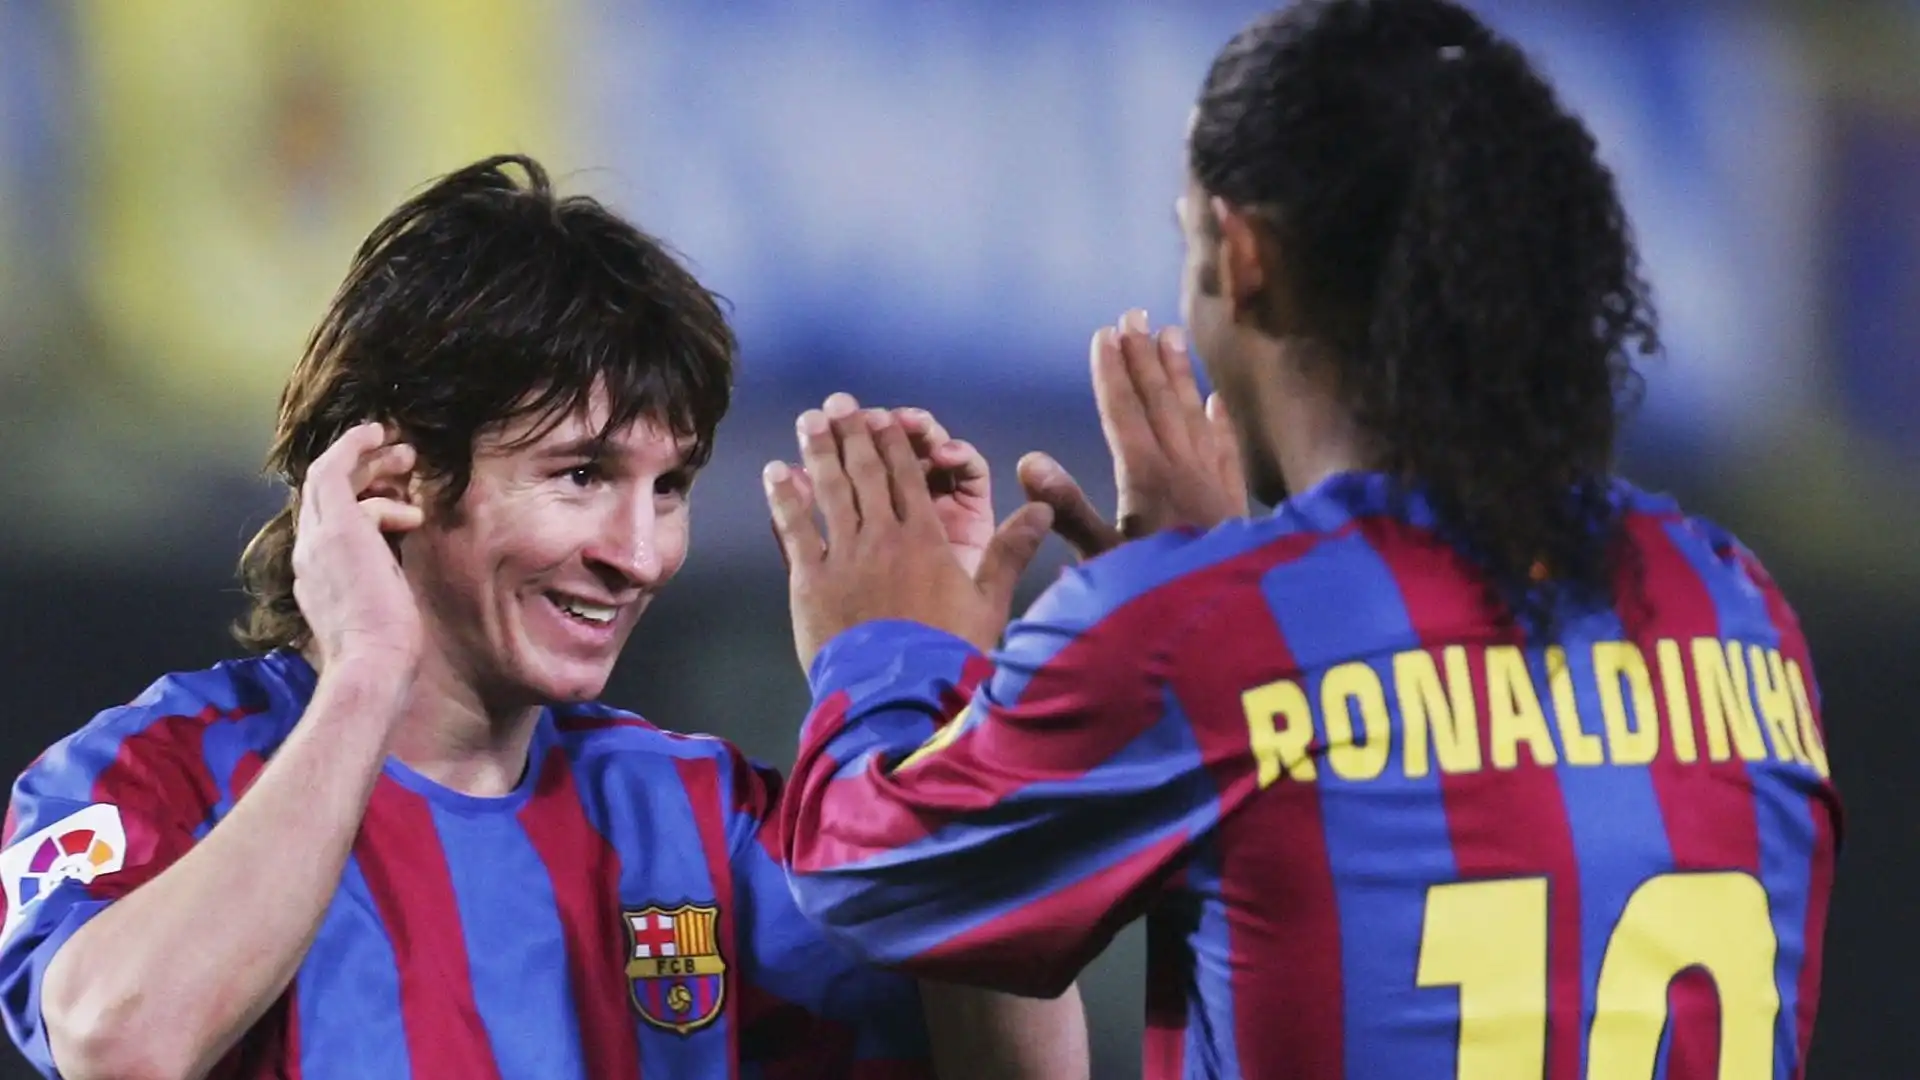 Lionel Messi e Ronaldinho (Barcellona 2004-2008): un mix esplosivo di tecnica e creatività